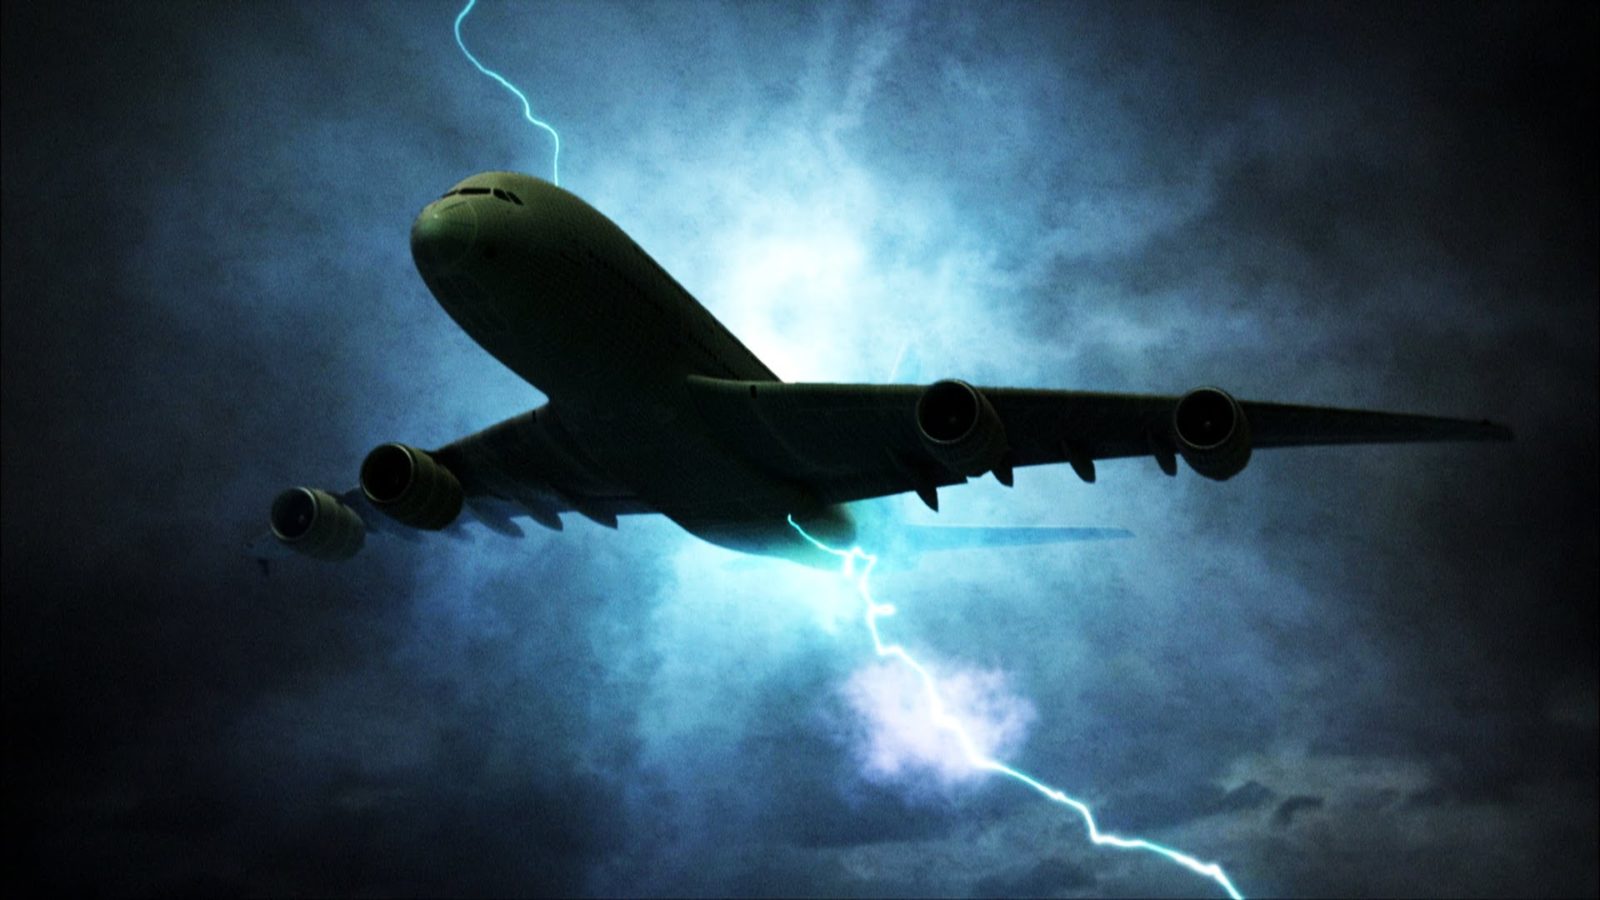 Incidente espacio-temporal en pleno vuelo: La «nube» que secuestró un avión